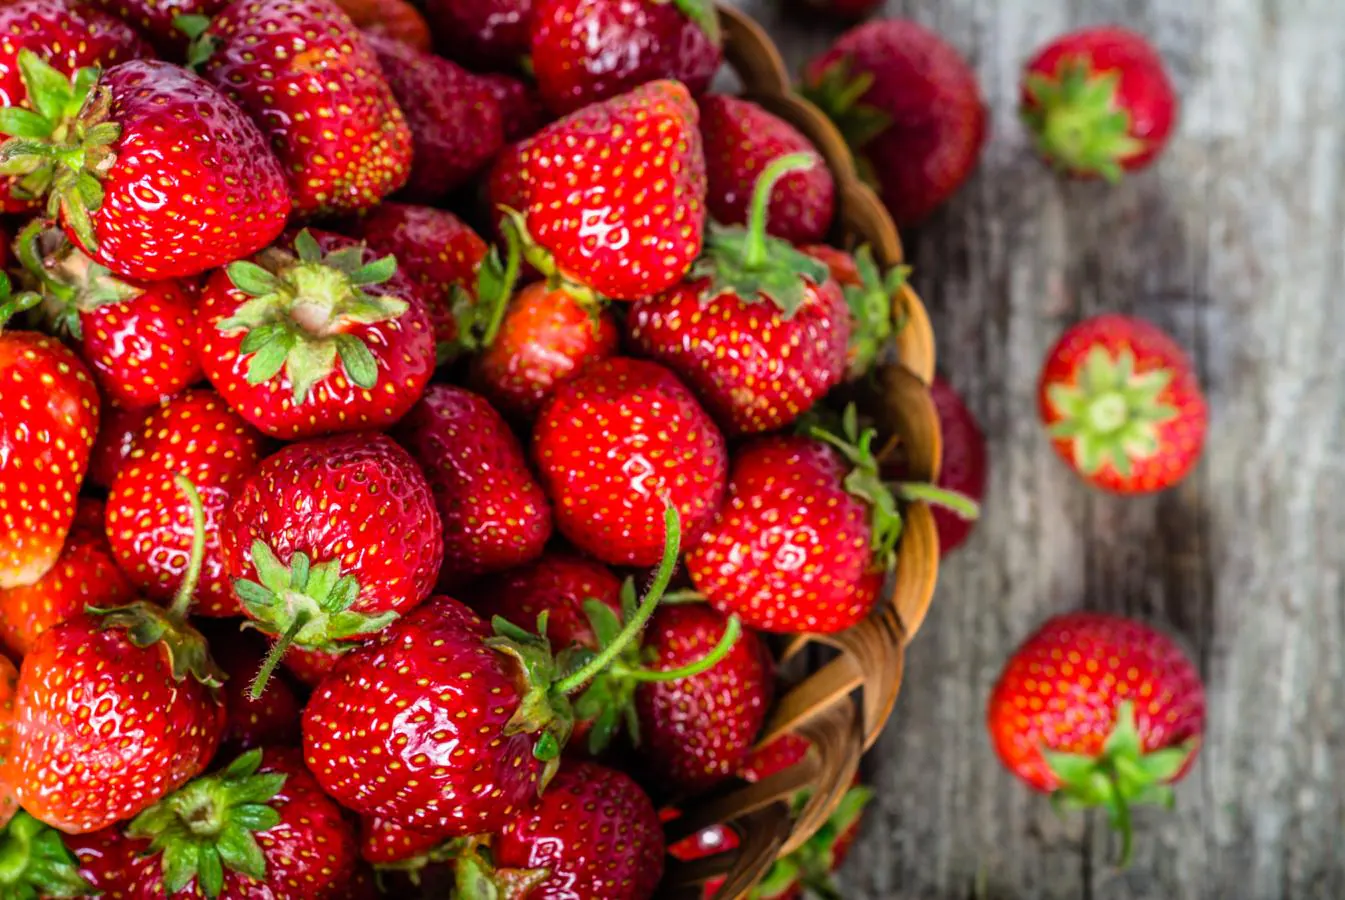 Las fresas, frutas con más vitamina C que la naranja. Este fruto rojo se encuentra en su máximo esplendor de marzo a mayo. Rica en antioxidantes (la mayor parte de ellos, en las semillas), fibra y minerales (potasio, magnesio y manganeso). Las <a href="https://www.abc.es/bienestar/alimentacion/abci-fresa-201909240903_noticia.html" target="_blank">fresas </a>aportan 60 mg de vitamina C por cada 100 gramos.